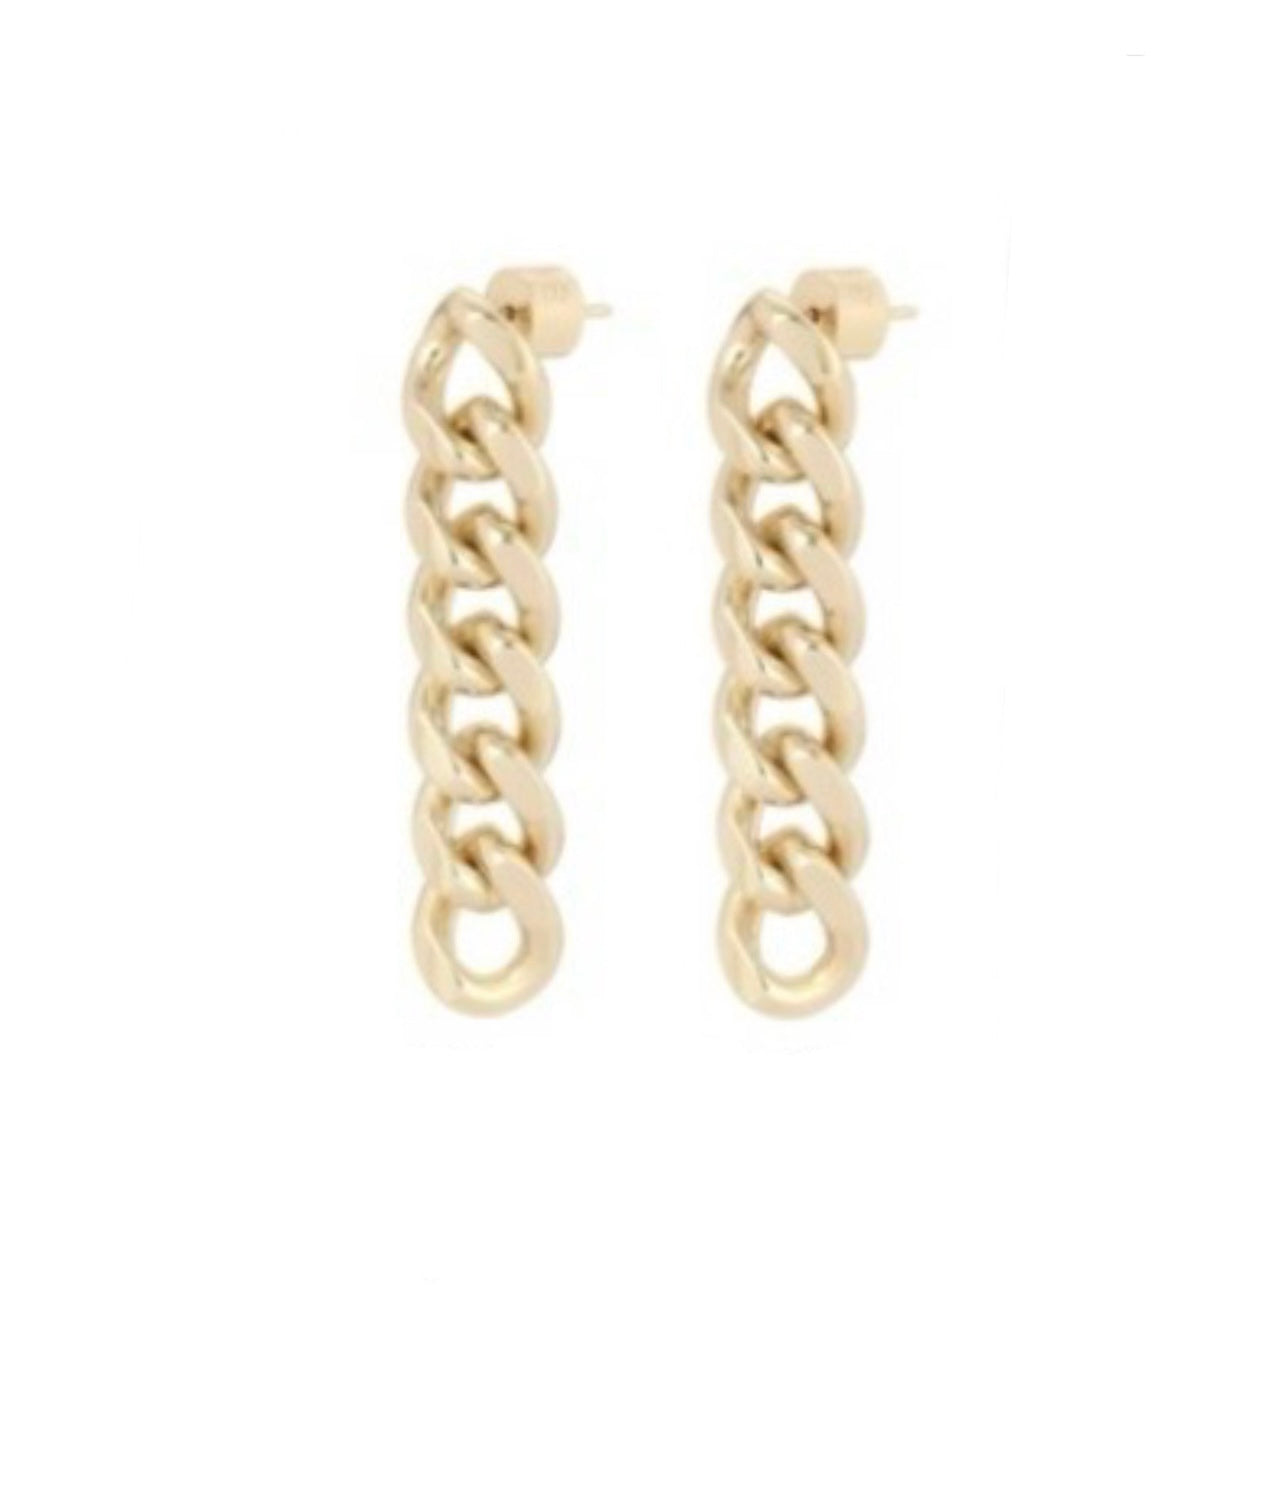 Six Link Chain Earrings